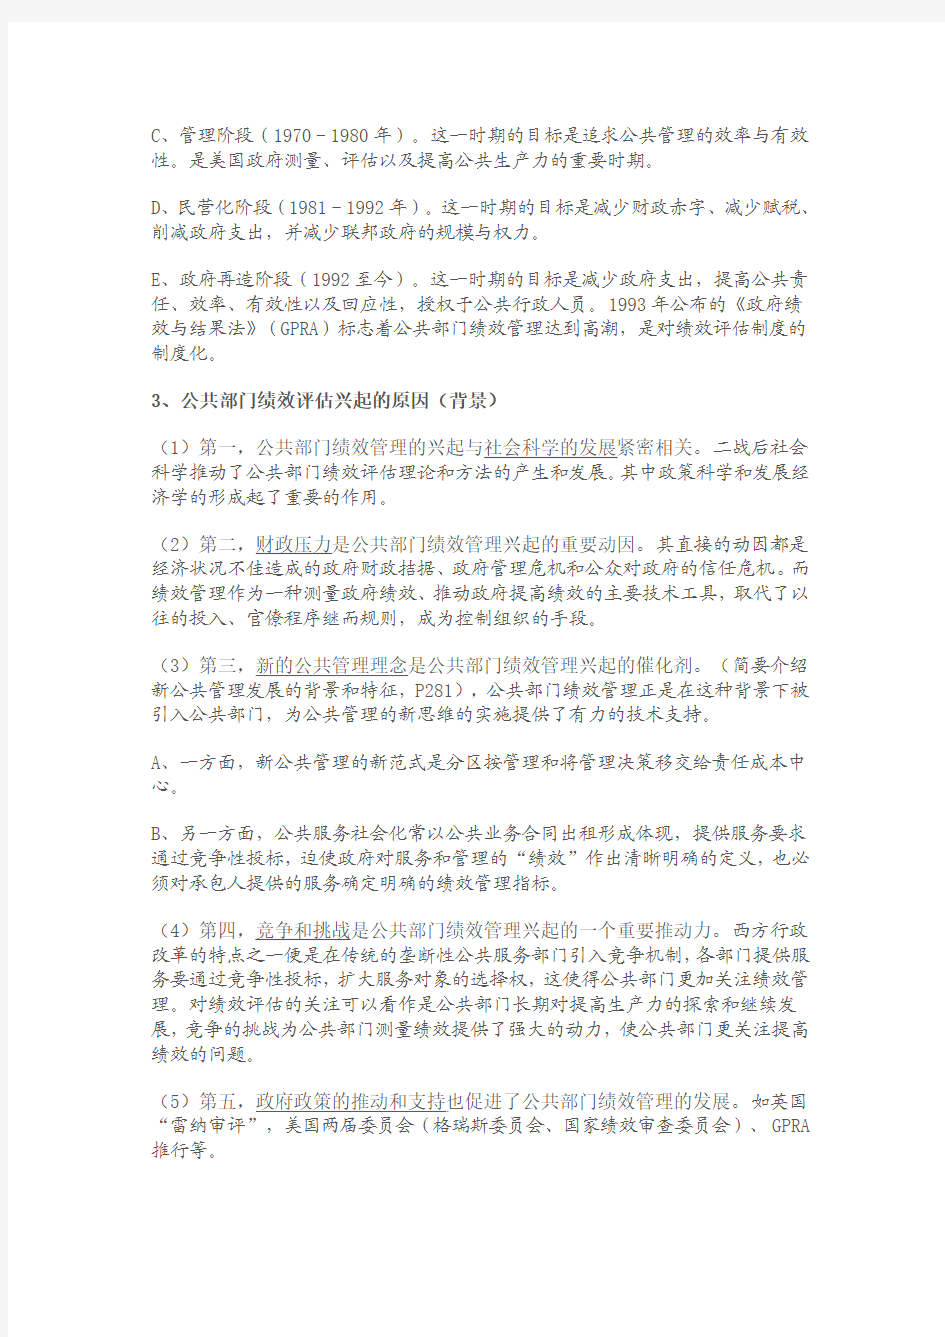 2012年南大社保考研 陈振明 公共管理学笔记 第六章  绩效管理